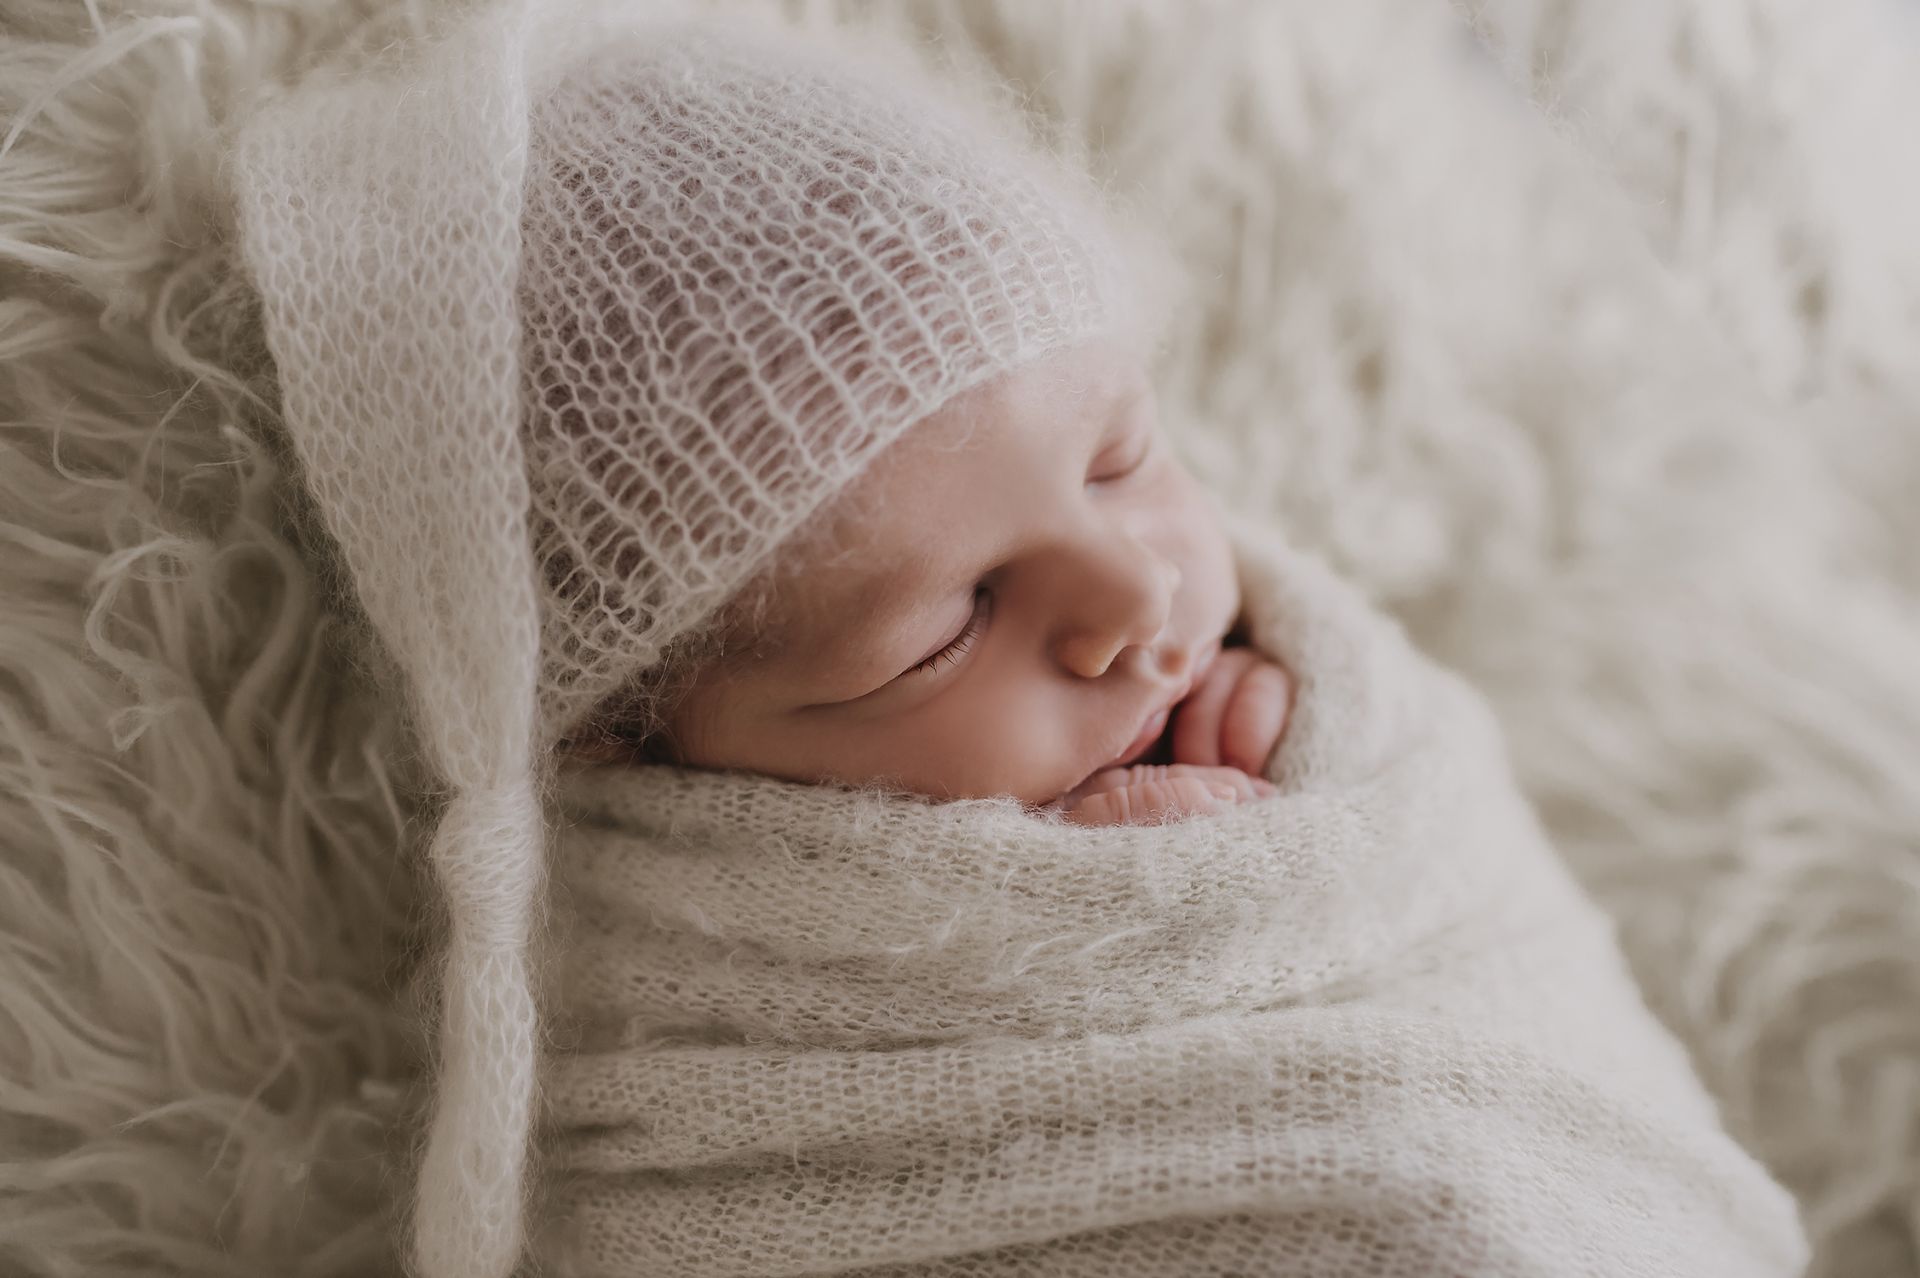 Neugeborenenfotografie-Schwangerschaftsfotografie-9month-Babyfotos-Babyshooting-Newbornfotos-Babybauchfotos-Fotografie-Katharina-Müller-www.fotografie-km.de